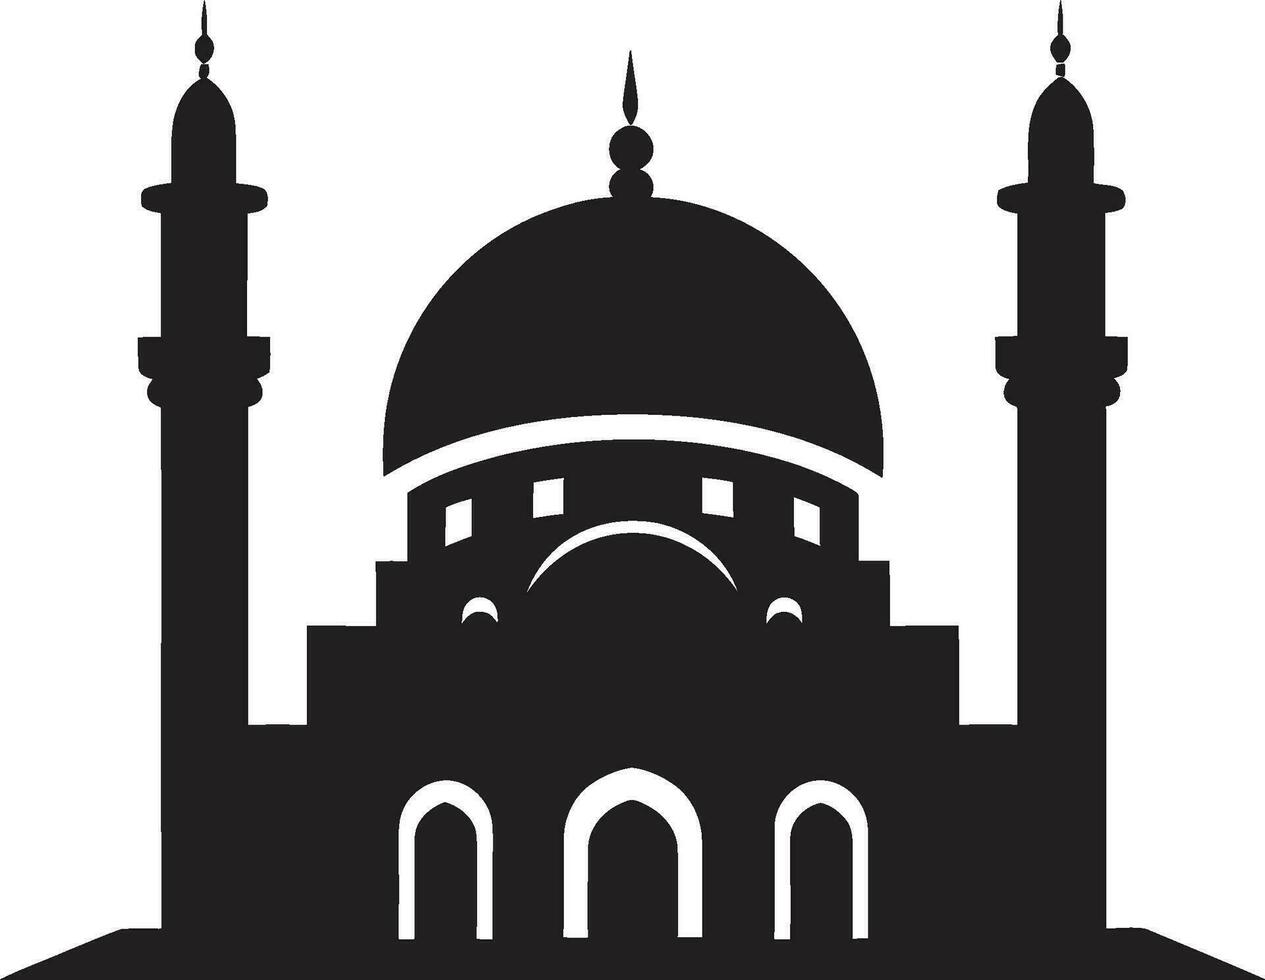 santificado serenidad emblemático mezquita icono alminar majestad mezquita emblemático diseño vector